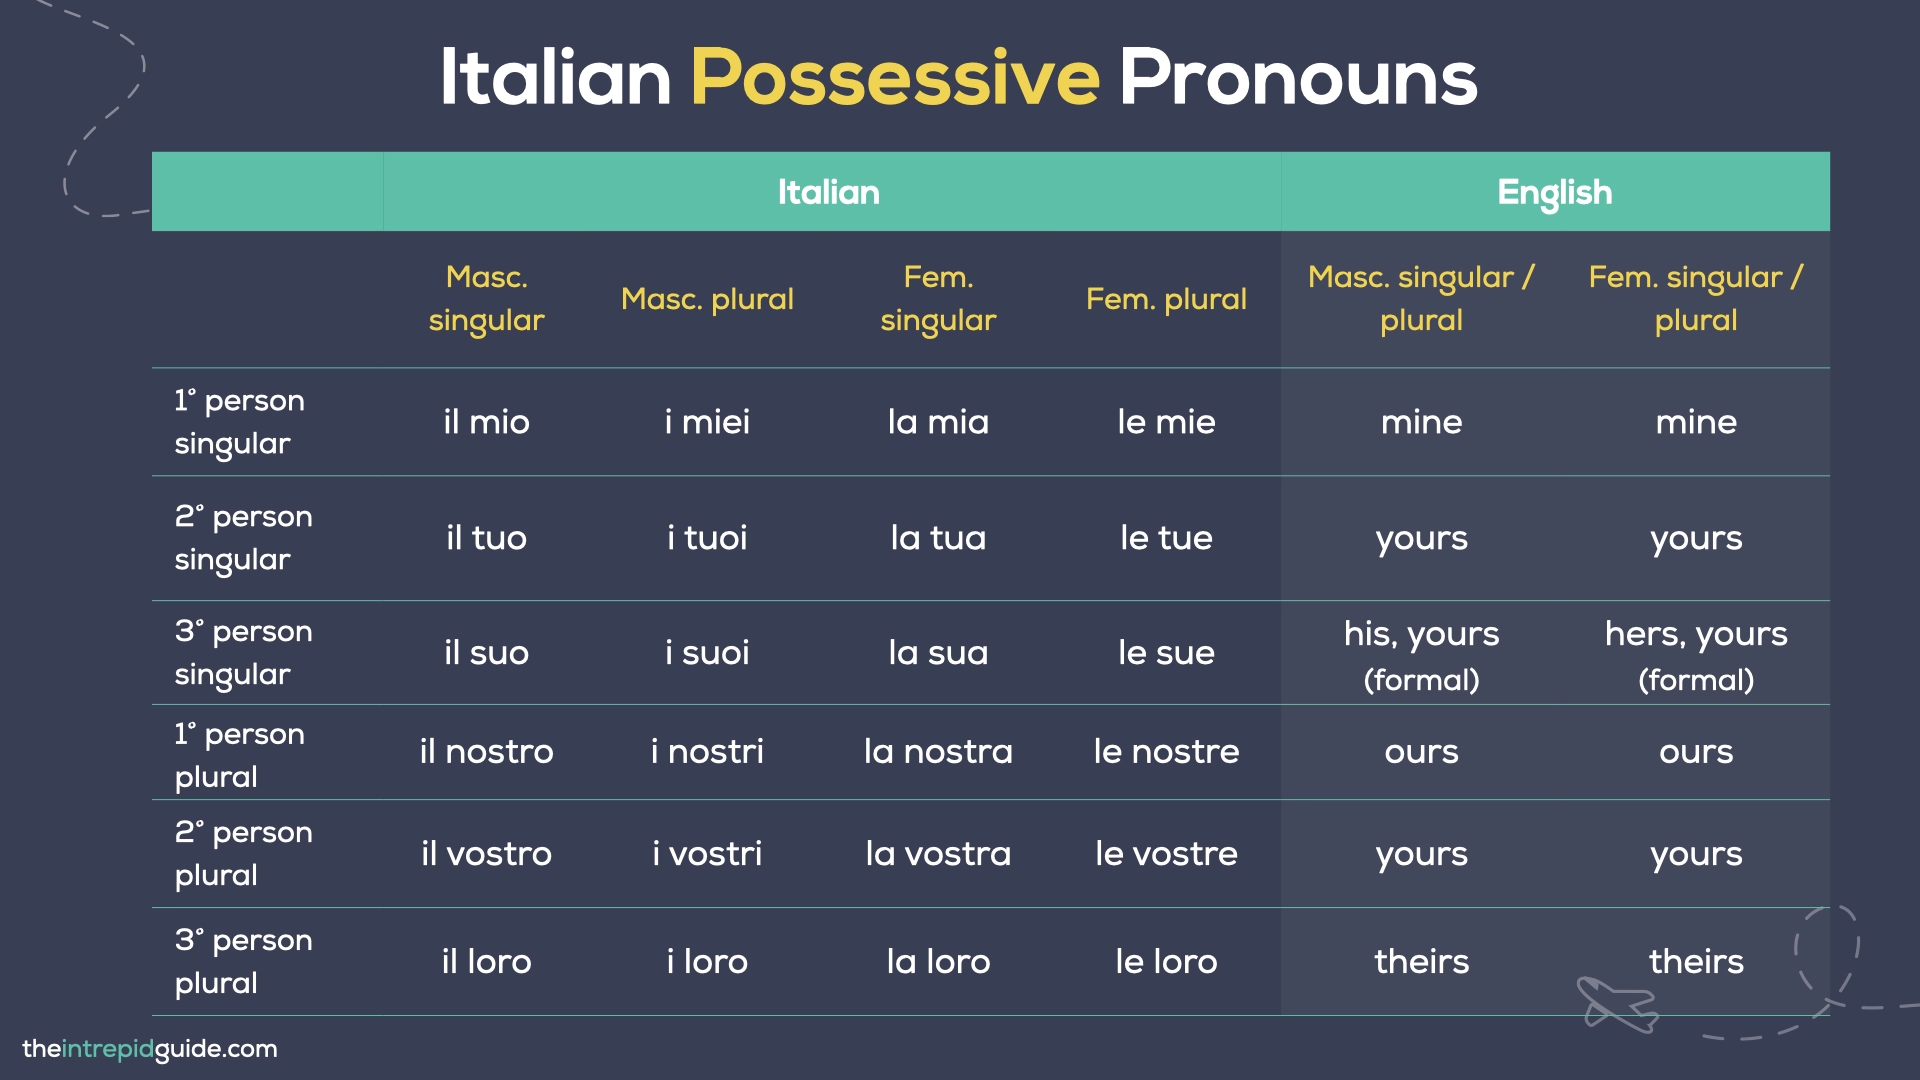 Italian Pronouns - Italian Possessive Pronouns Chart